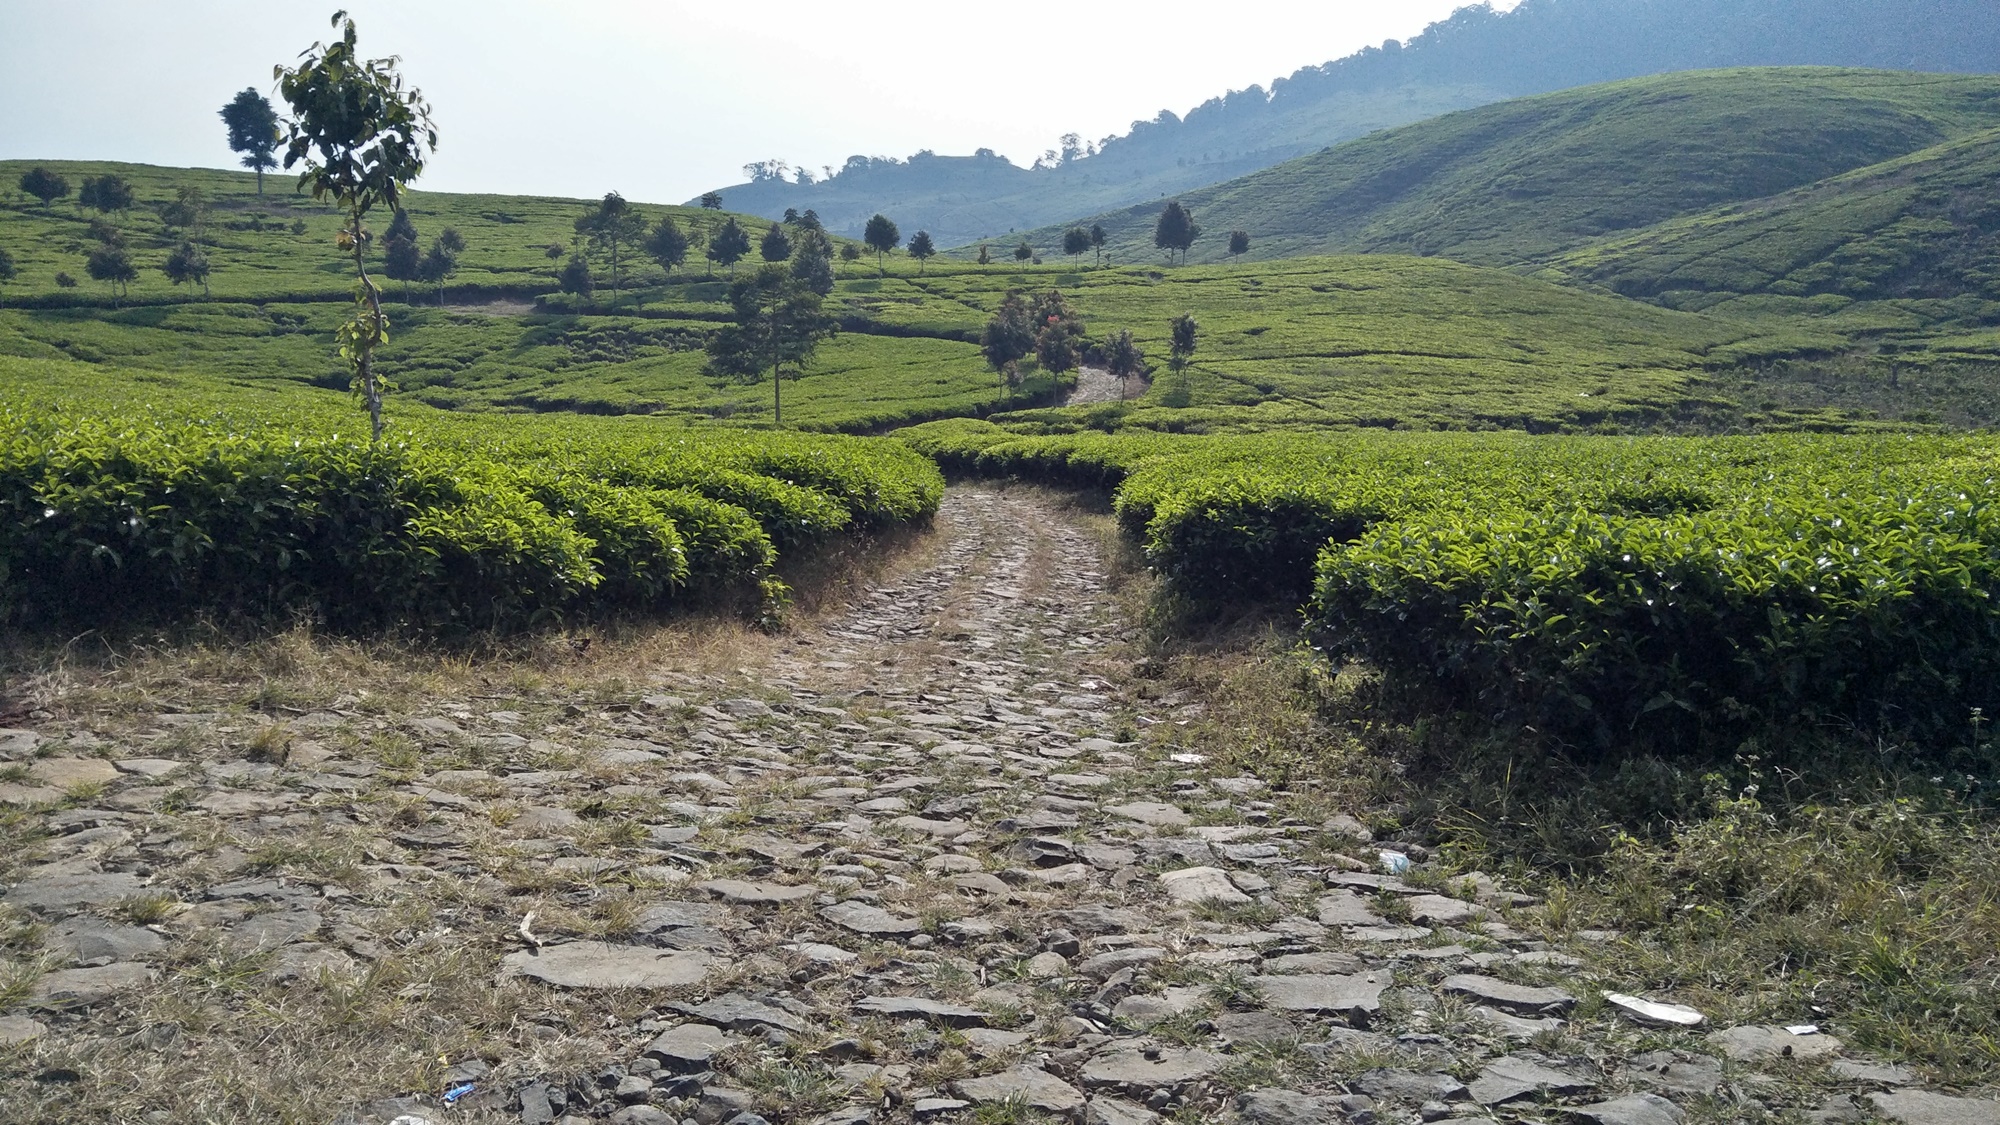 Jalan makadam yang melintasi perkebunan teh nan asri